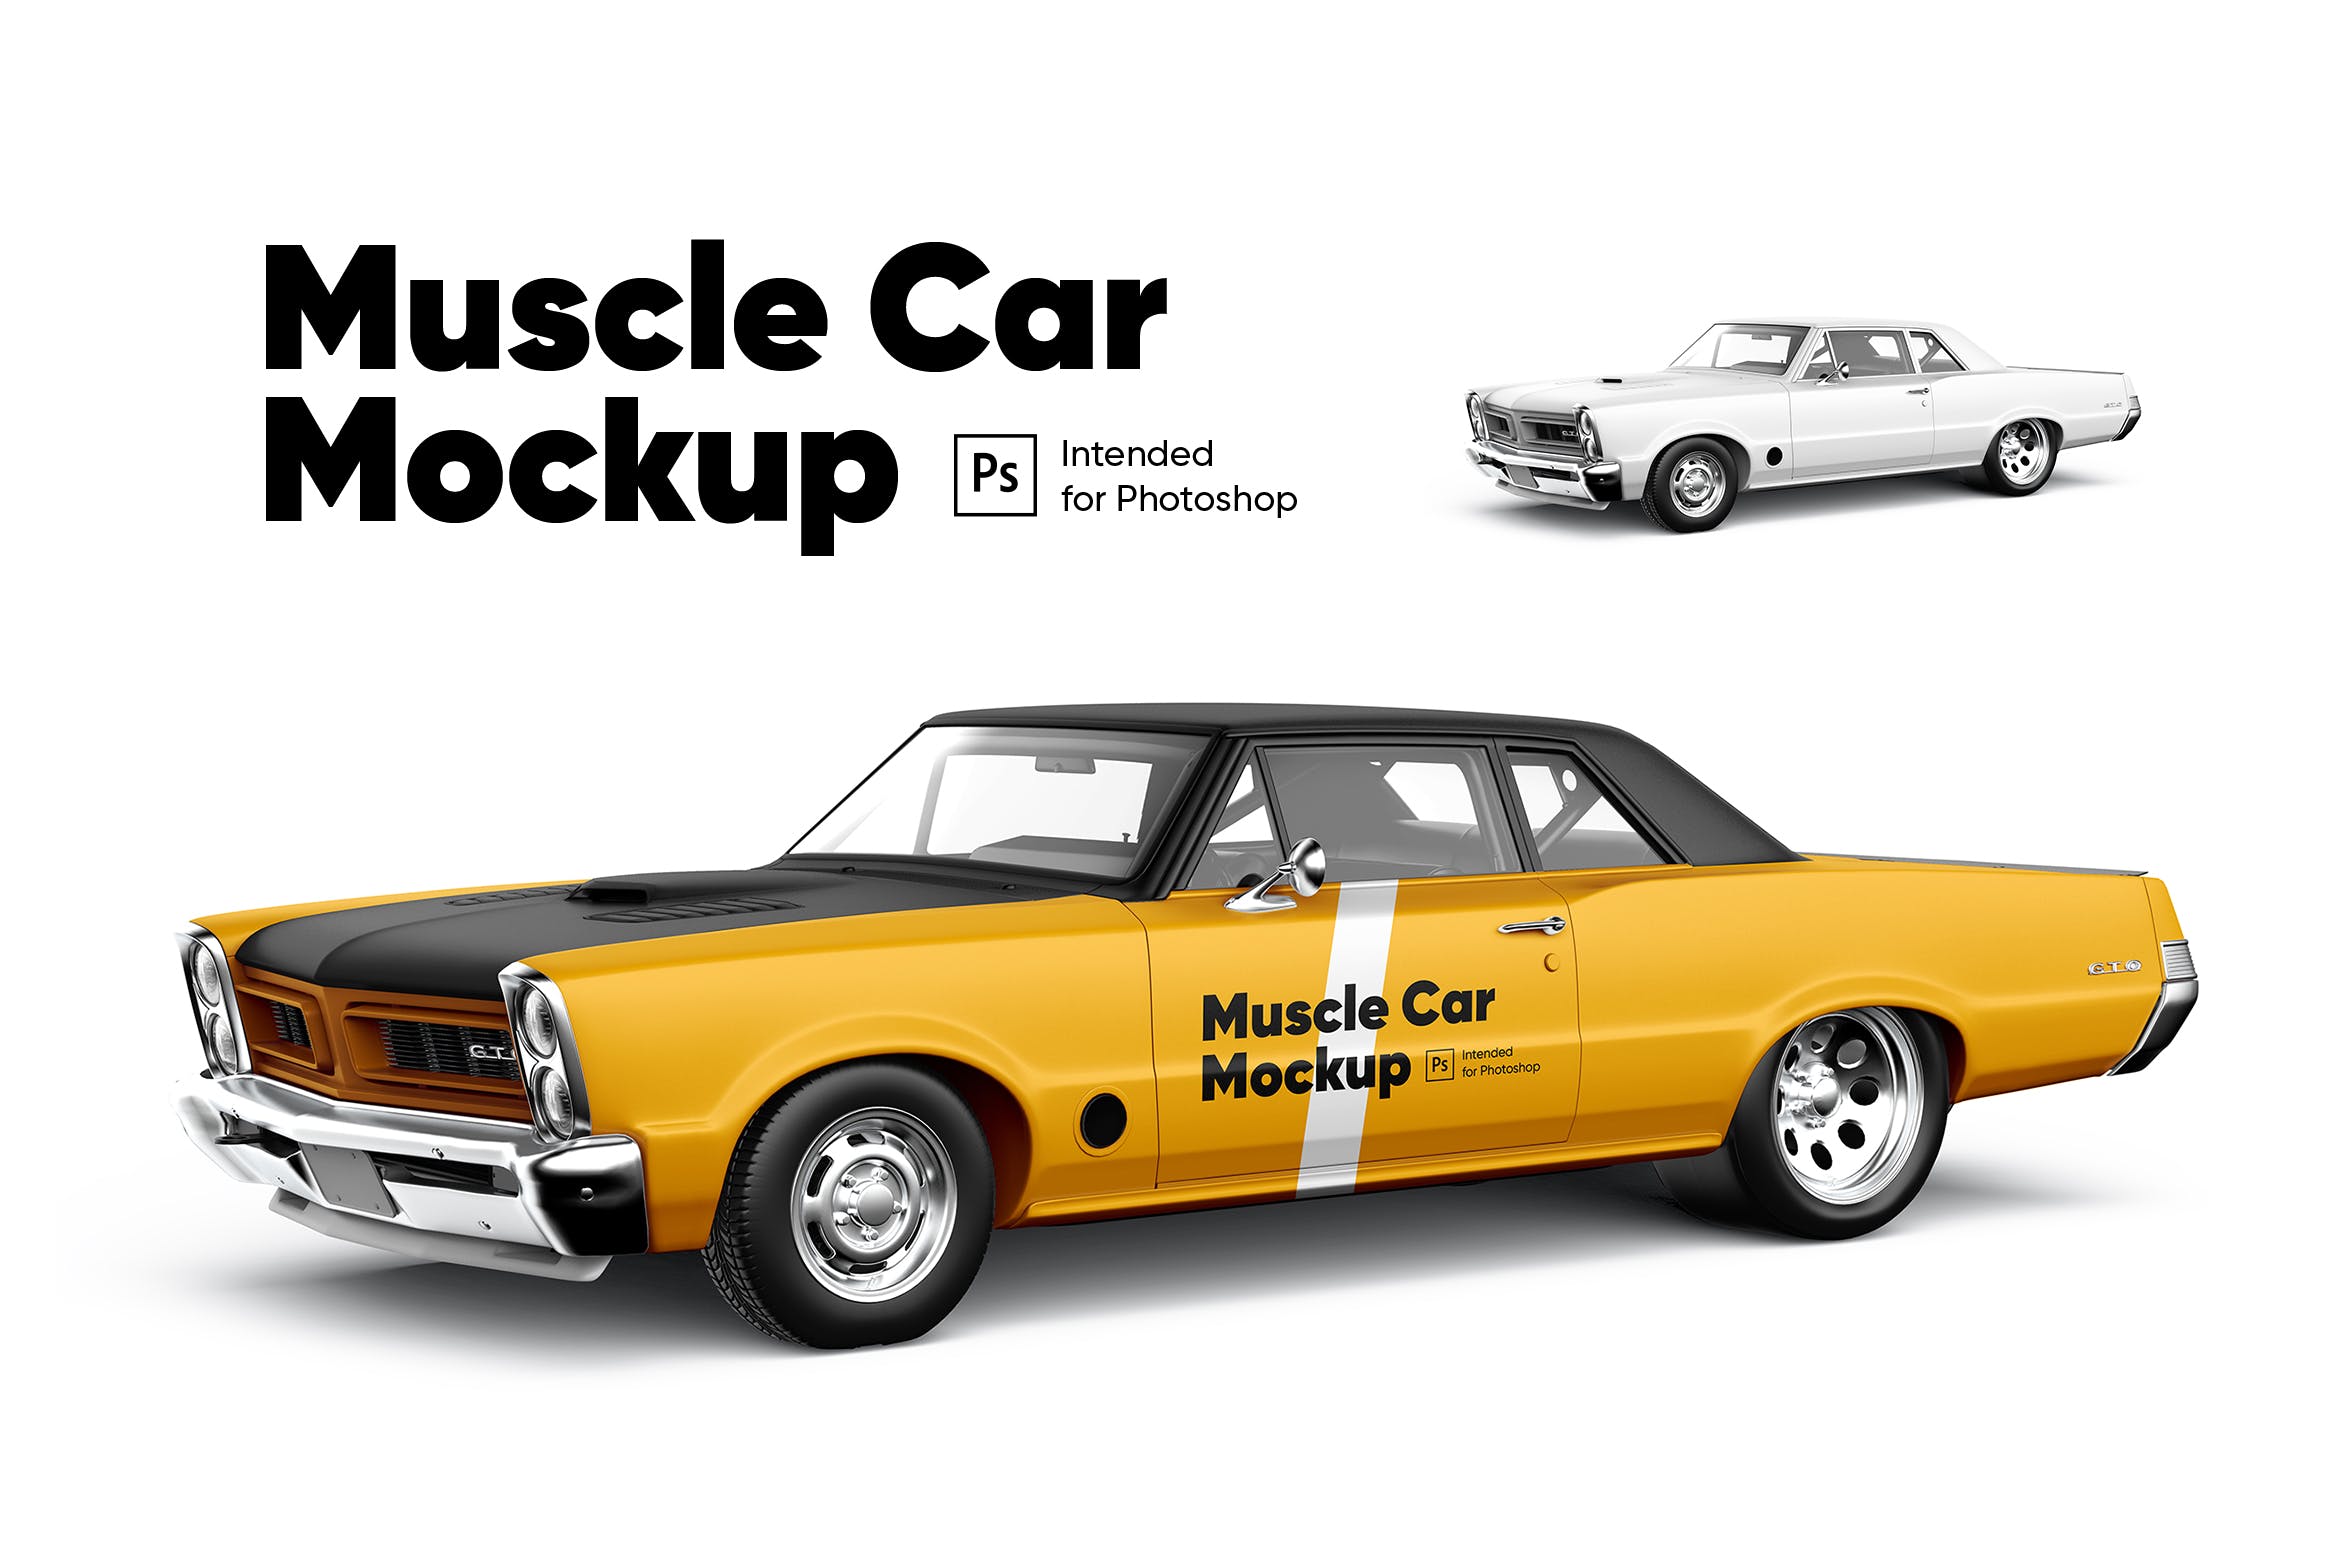 车身广告设计样机模板 Muscle Car Mockup设计素材模板